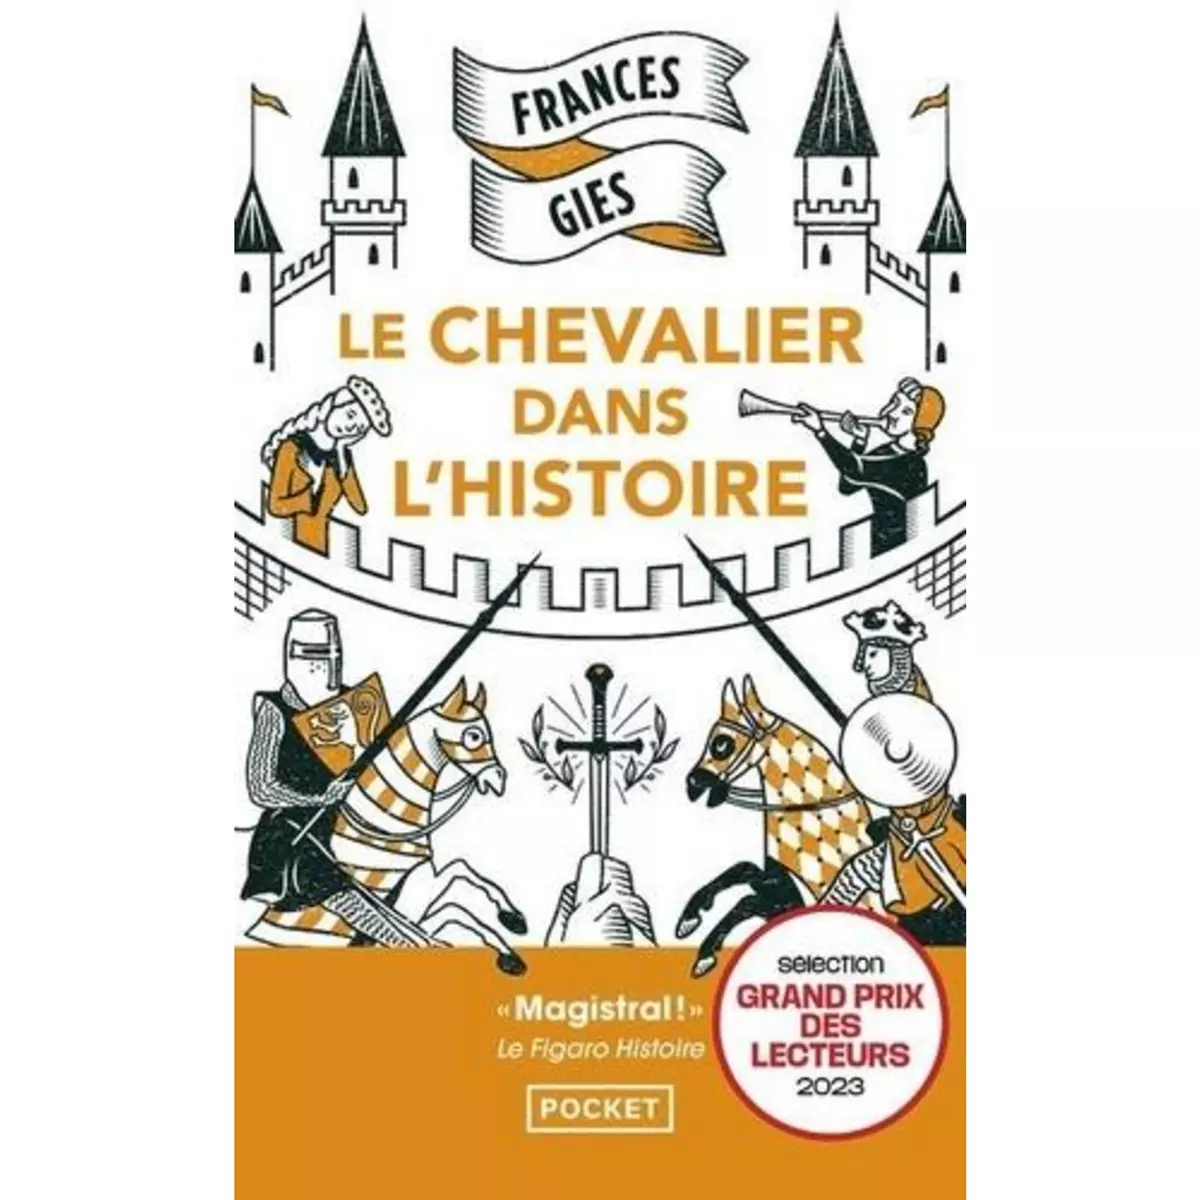  LE CHEVALIER DANS L'HISTOIRE, Gies Frances